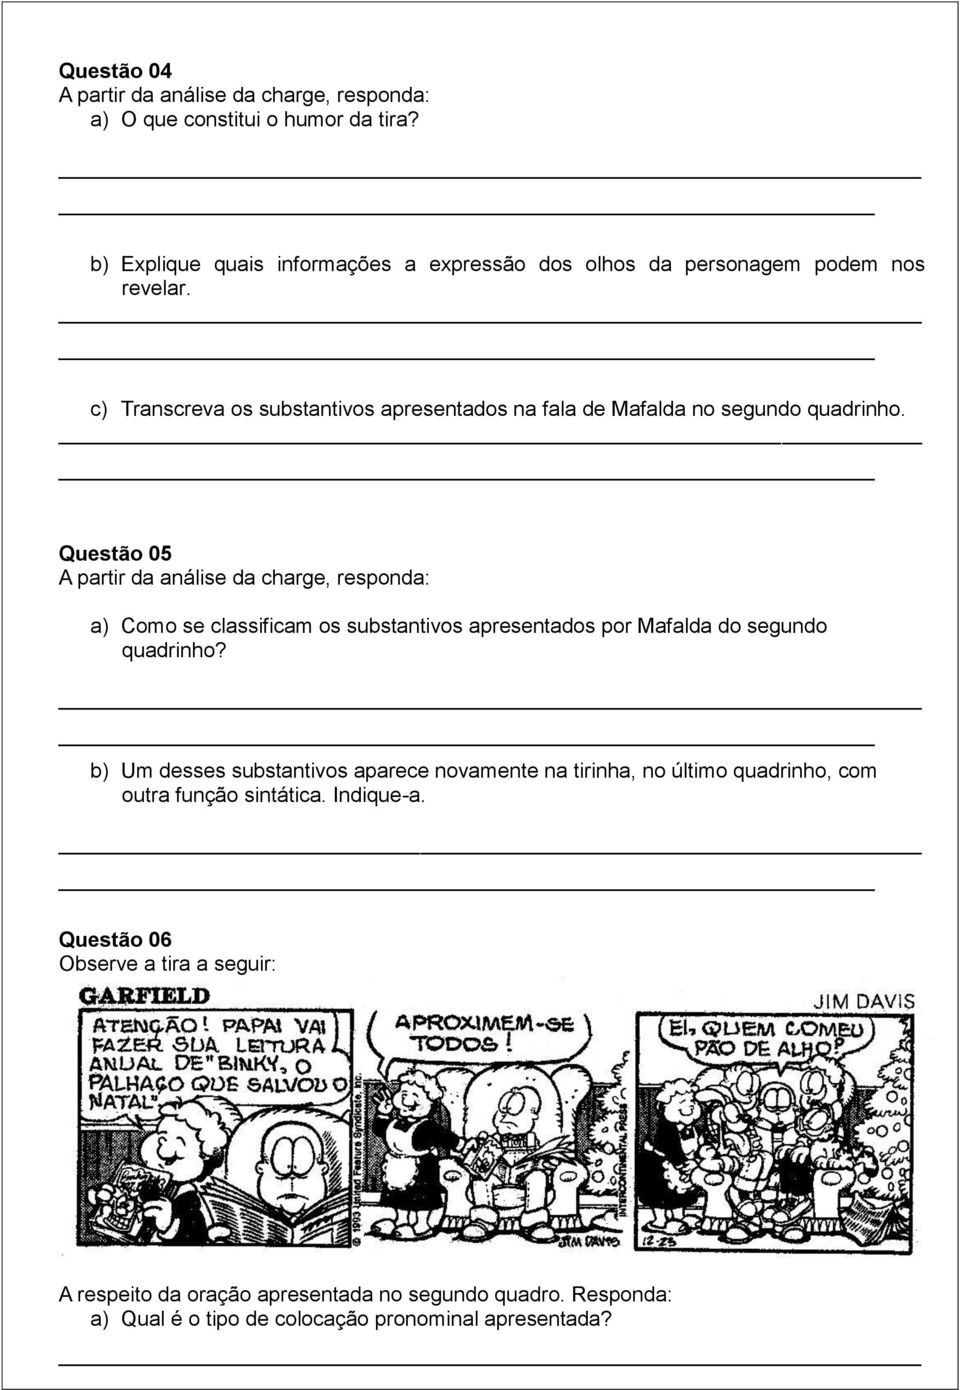 c) Transcreva os substantivos apresentados na fala de Mafalda no segundo quadrinho.